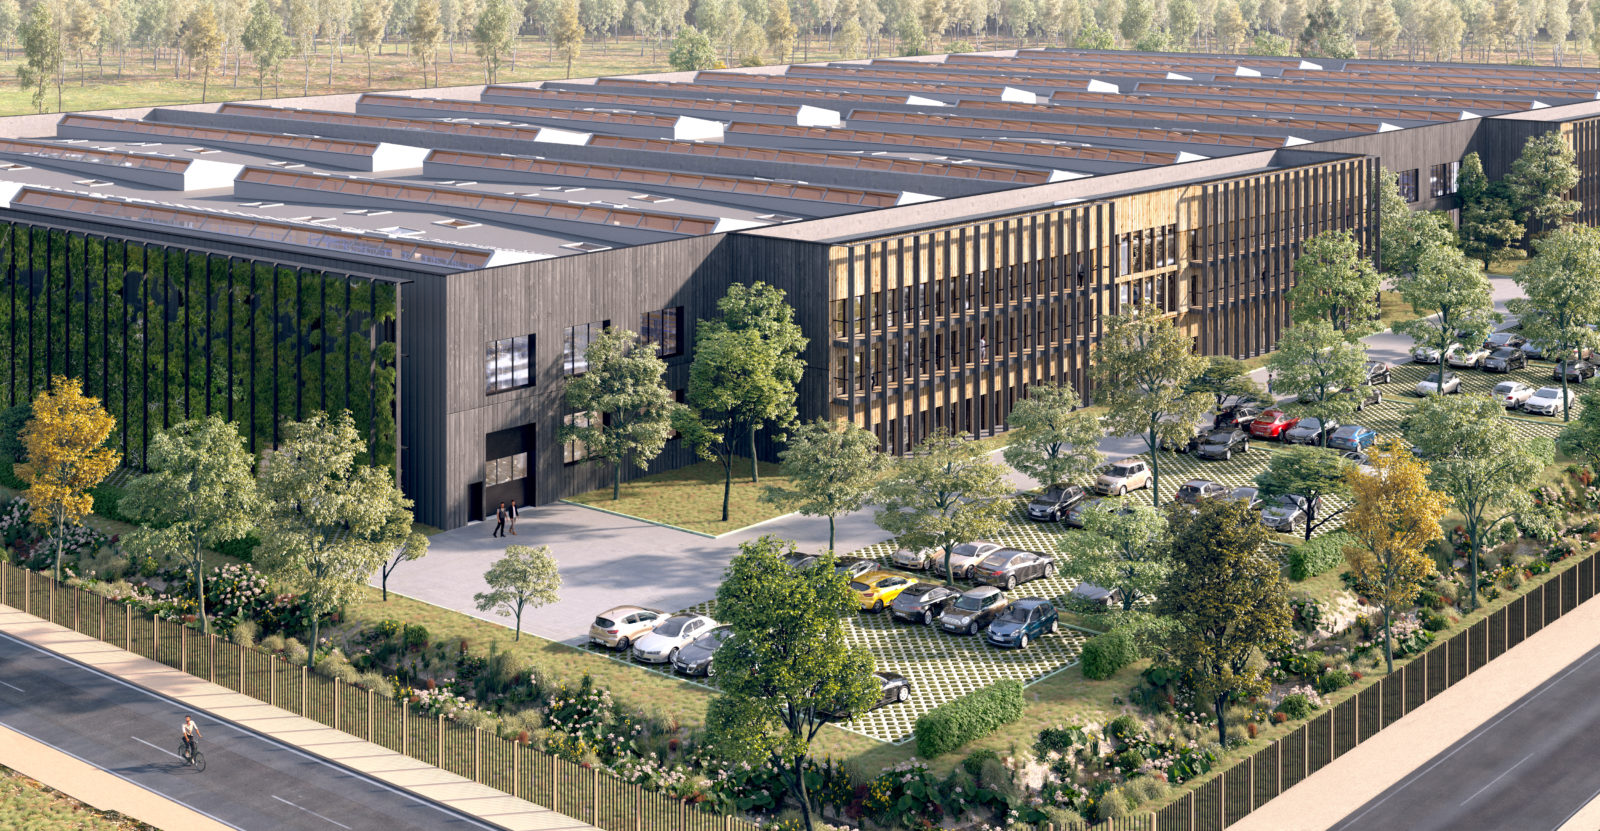 Lot B : Une offre innovante à la location de locaux industriels neufs de 6 000 m² à 12 000 m² livrés au 2ème semestre 2023 développée par JMG Partners